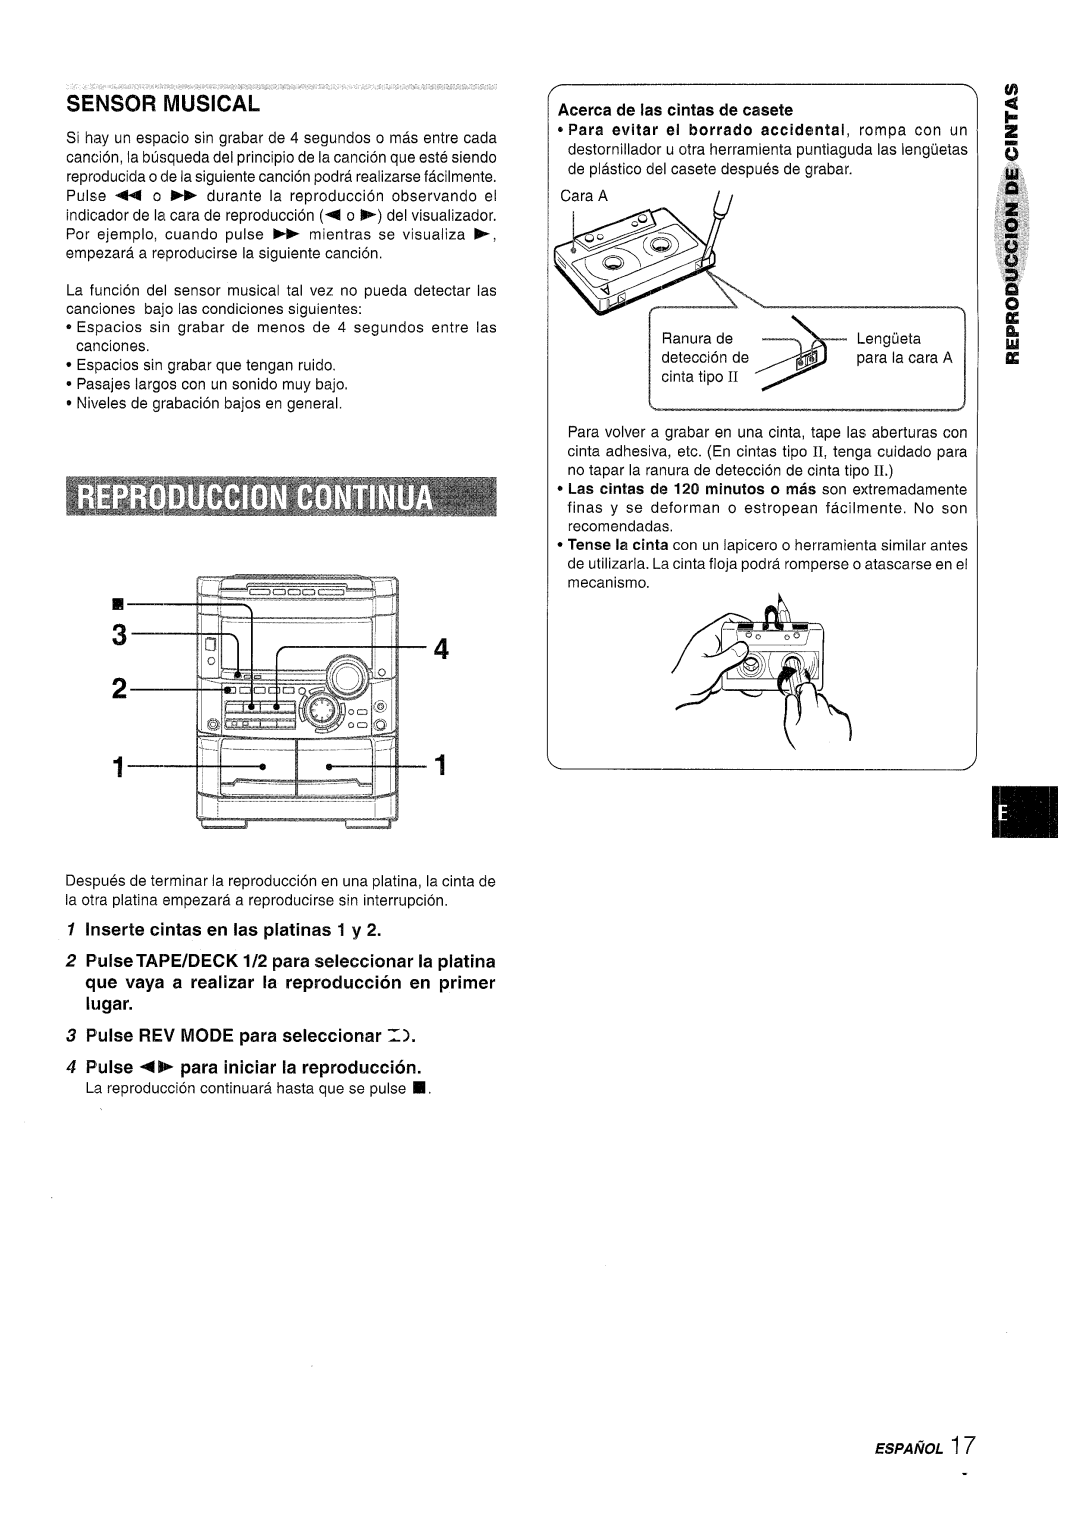 Sony NSX-A767 manual Irwerte cintas en Ias platinas 1 y, Pulse TAPE/DECK 1/2 para sehxxionar la platina 